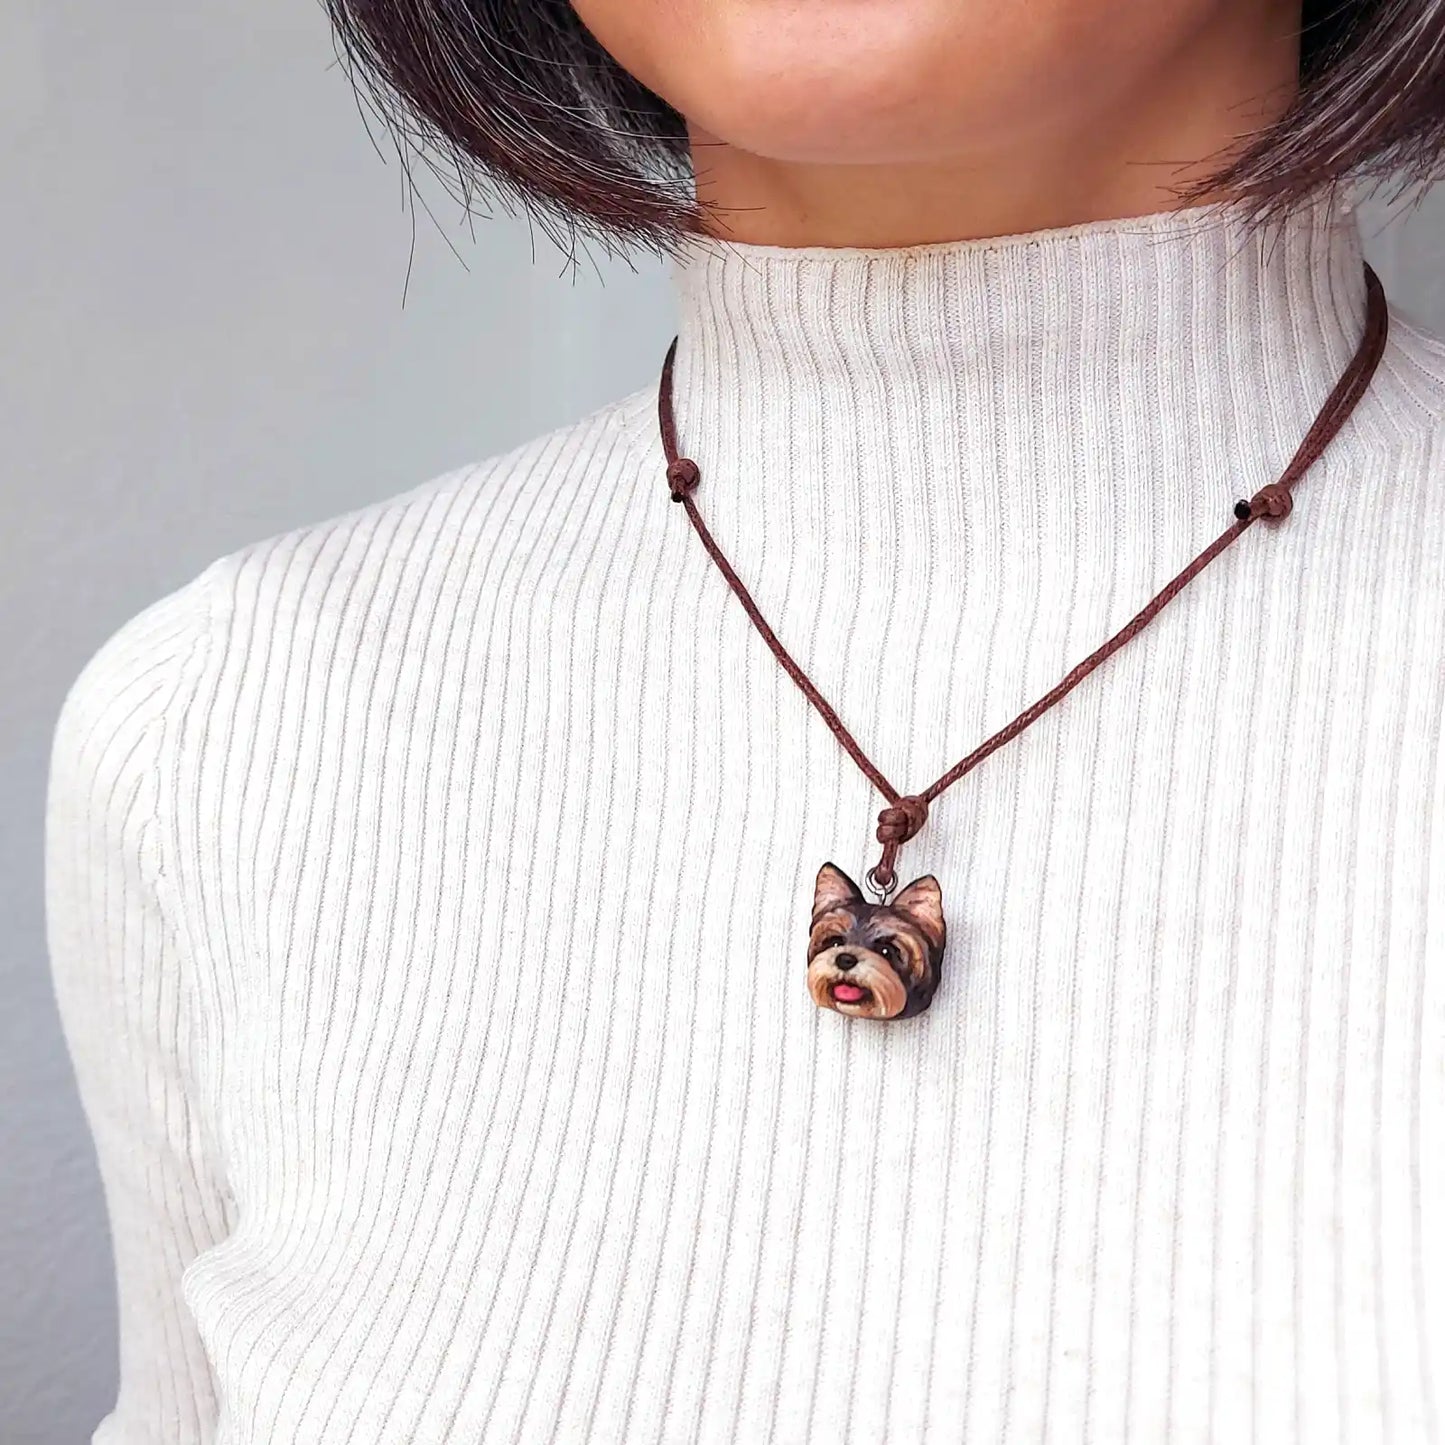 Yorkshire Terrier Pendant necklace | Black & Tan